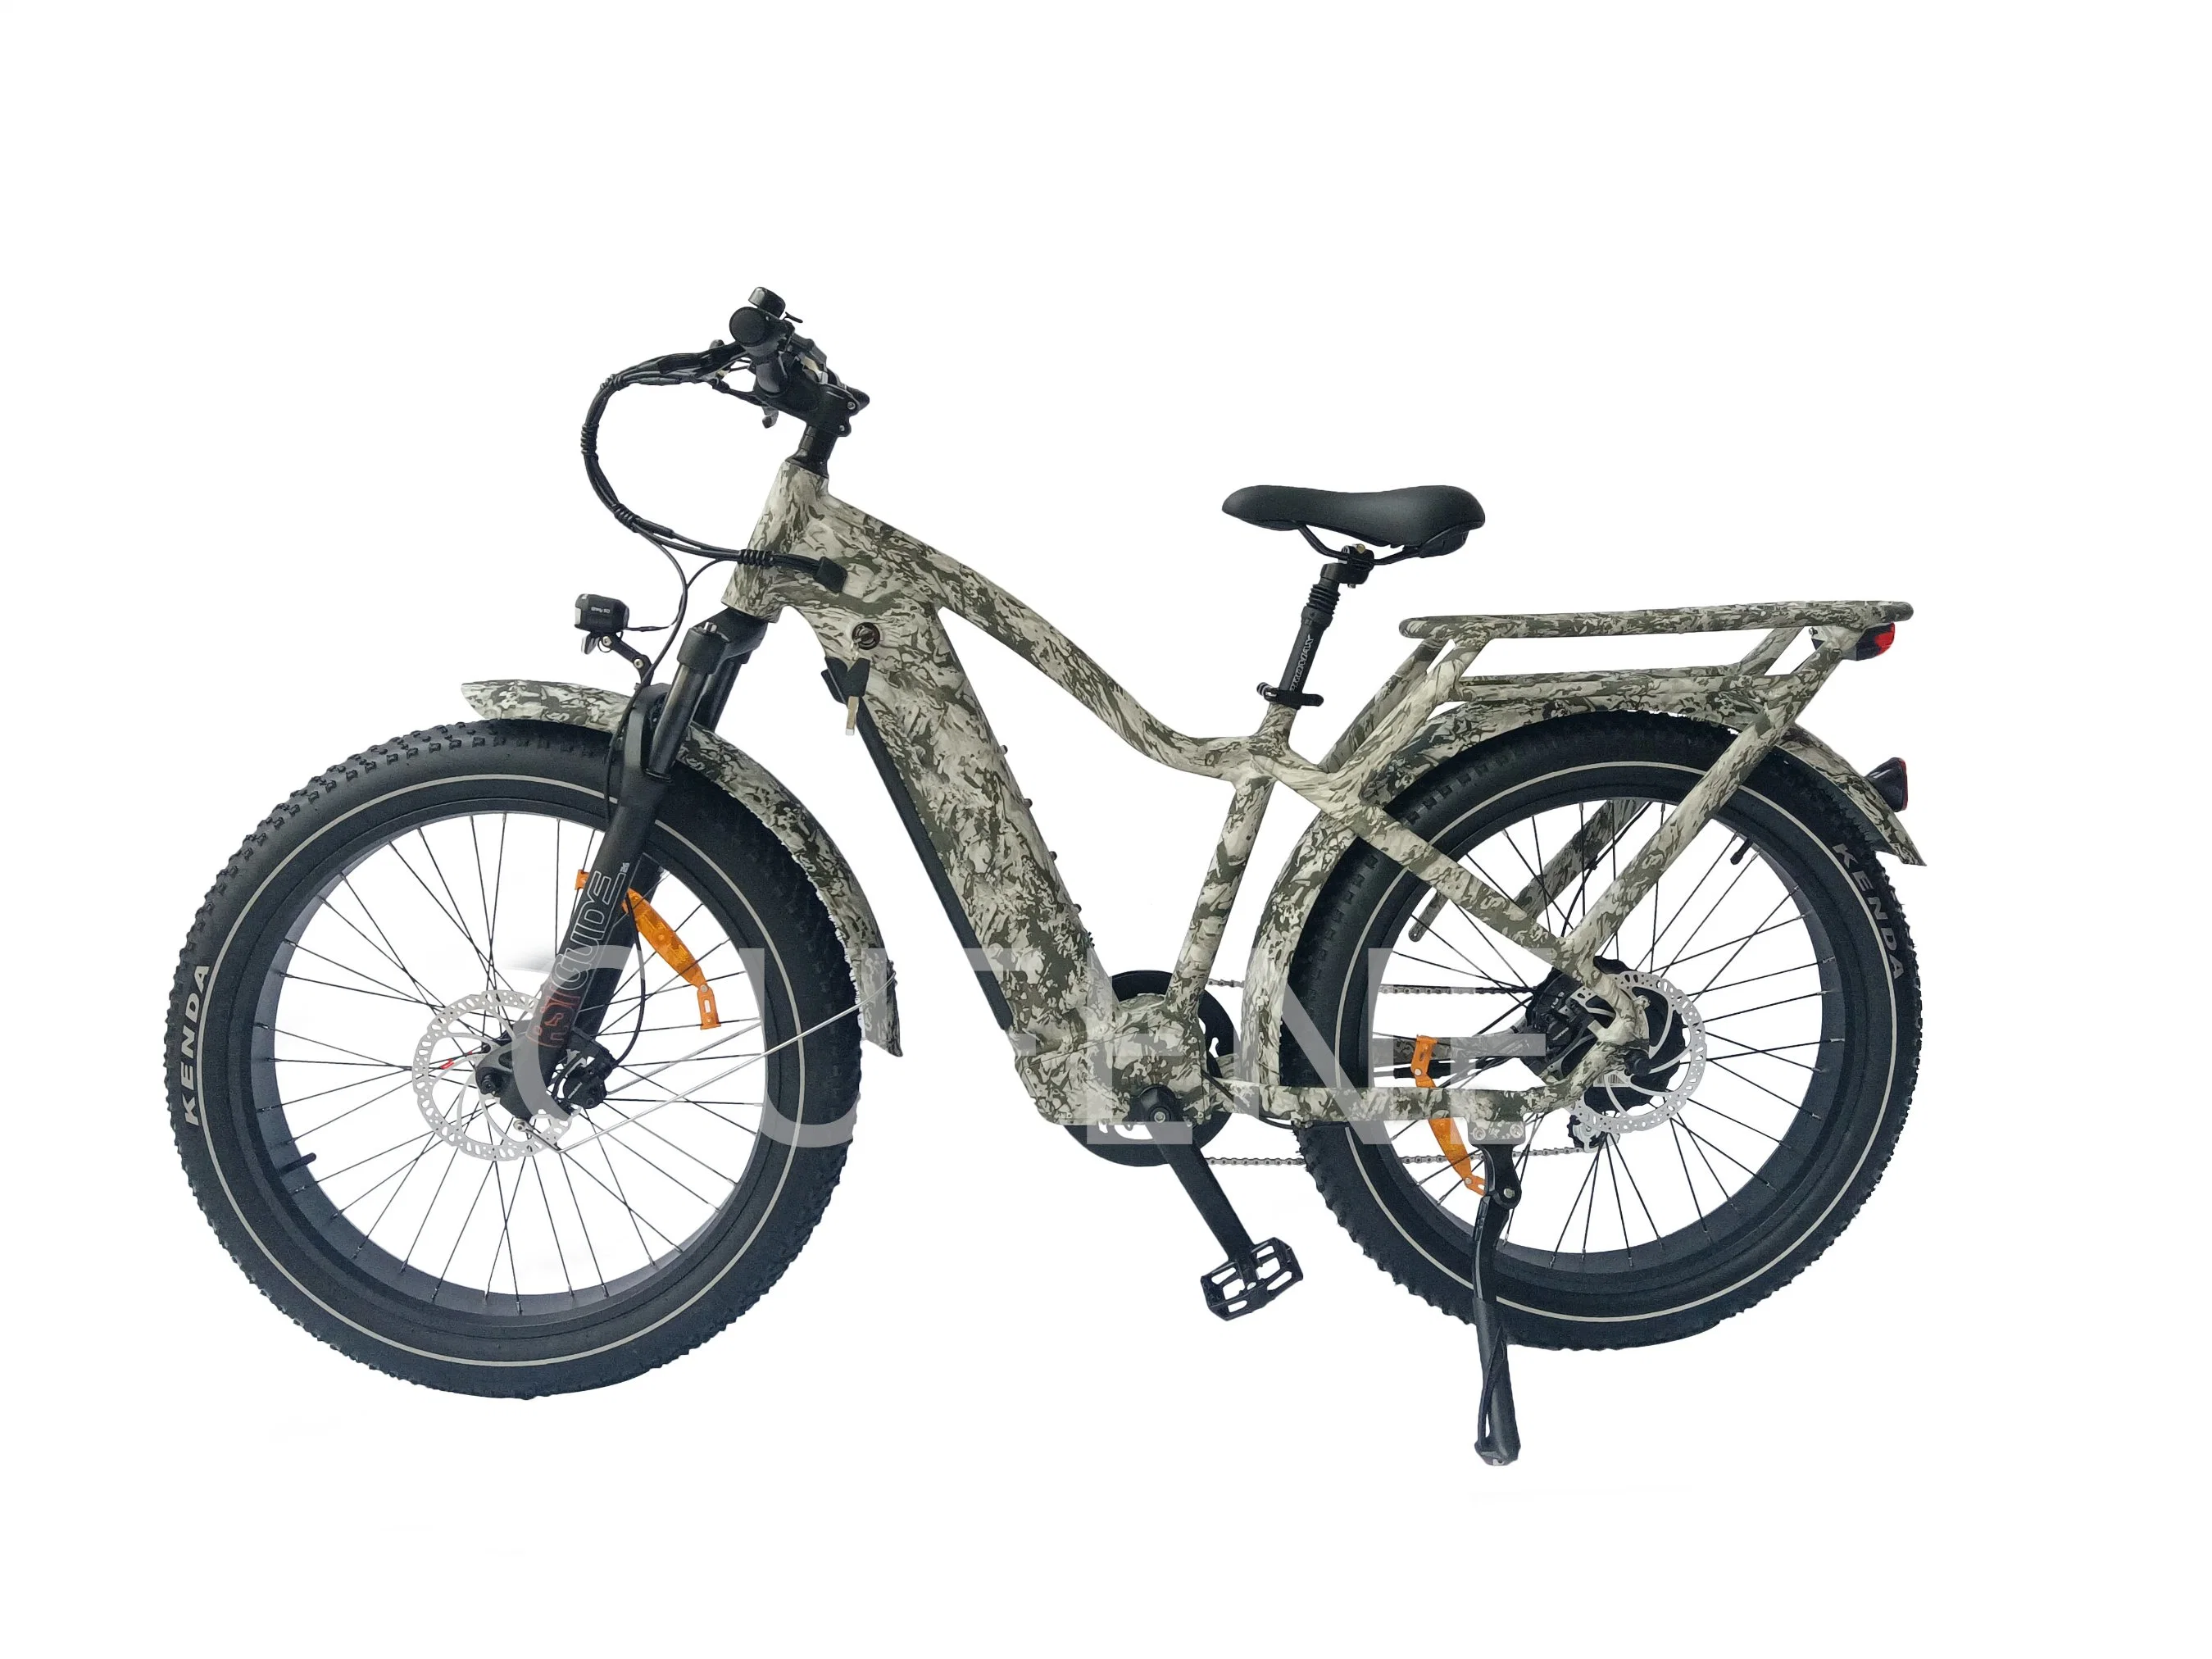 دراجة كهربائية بإطارات سميكة بقوة 500 واط / 750 واط / 1000 واط من براند كوين / بافانج بحجم 26 بوصة للتسلق في الجبال والتجوال على الثلوج.